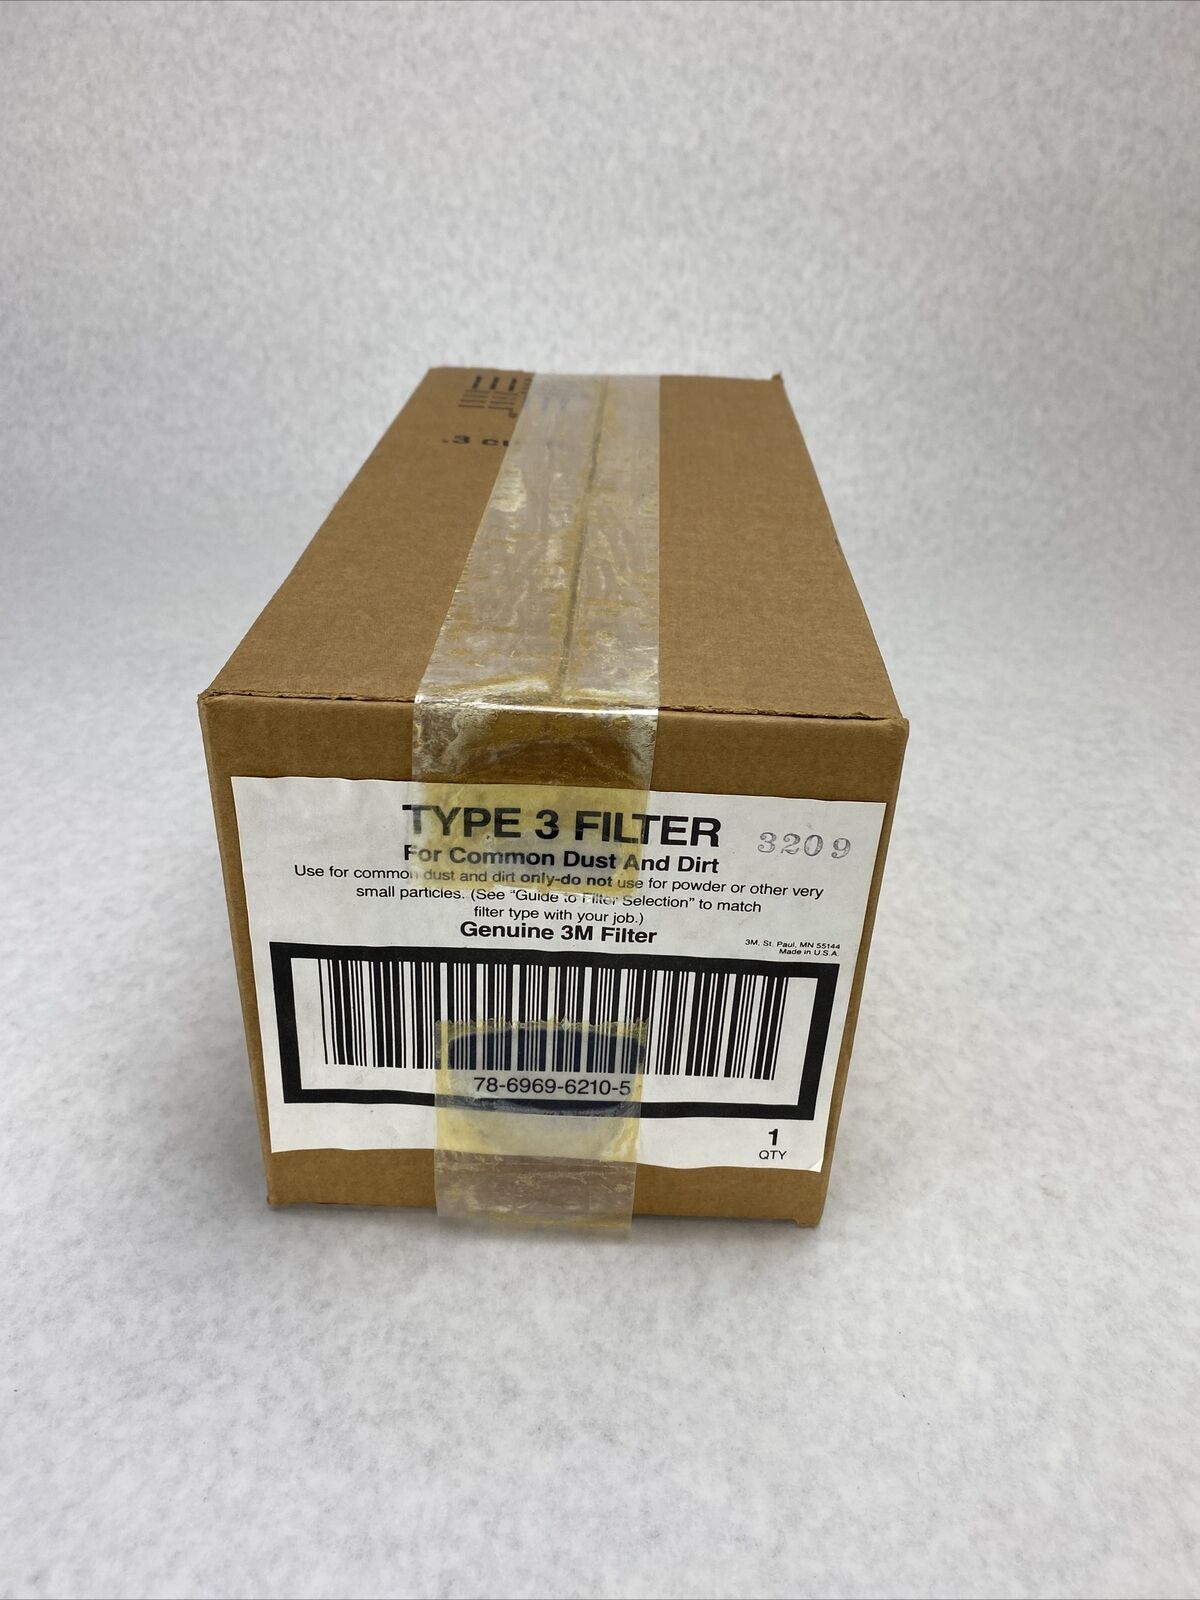 3M Type 3 Filter 78-6969-6210-5 Genuine Filter